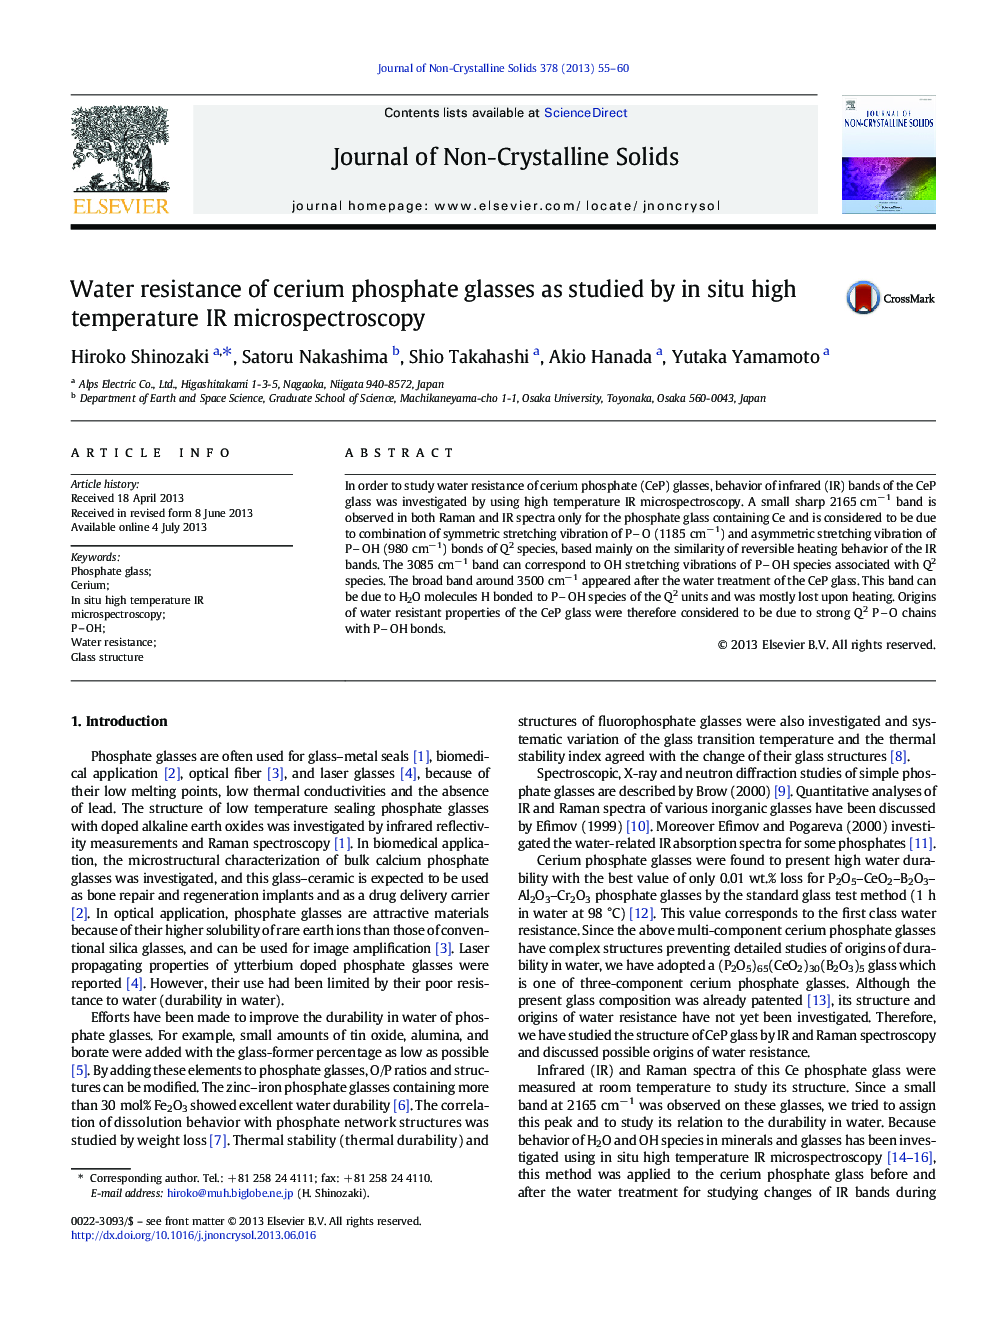 Water resistance of cerium phosphate glasses as studied by in situ high temperature IR microspectroscopy